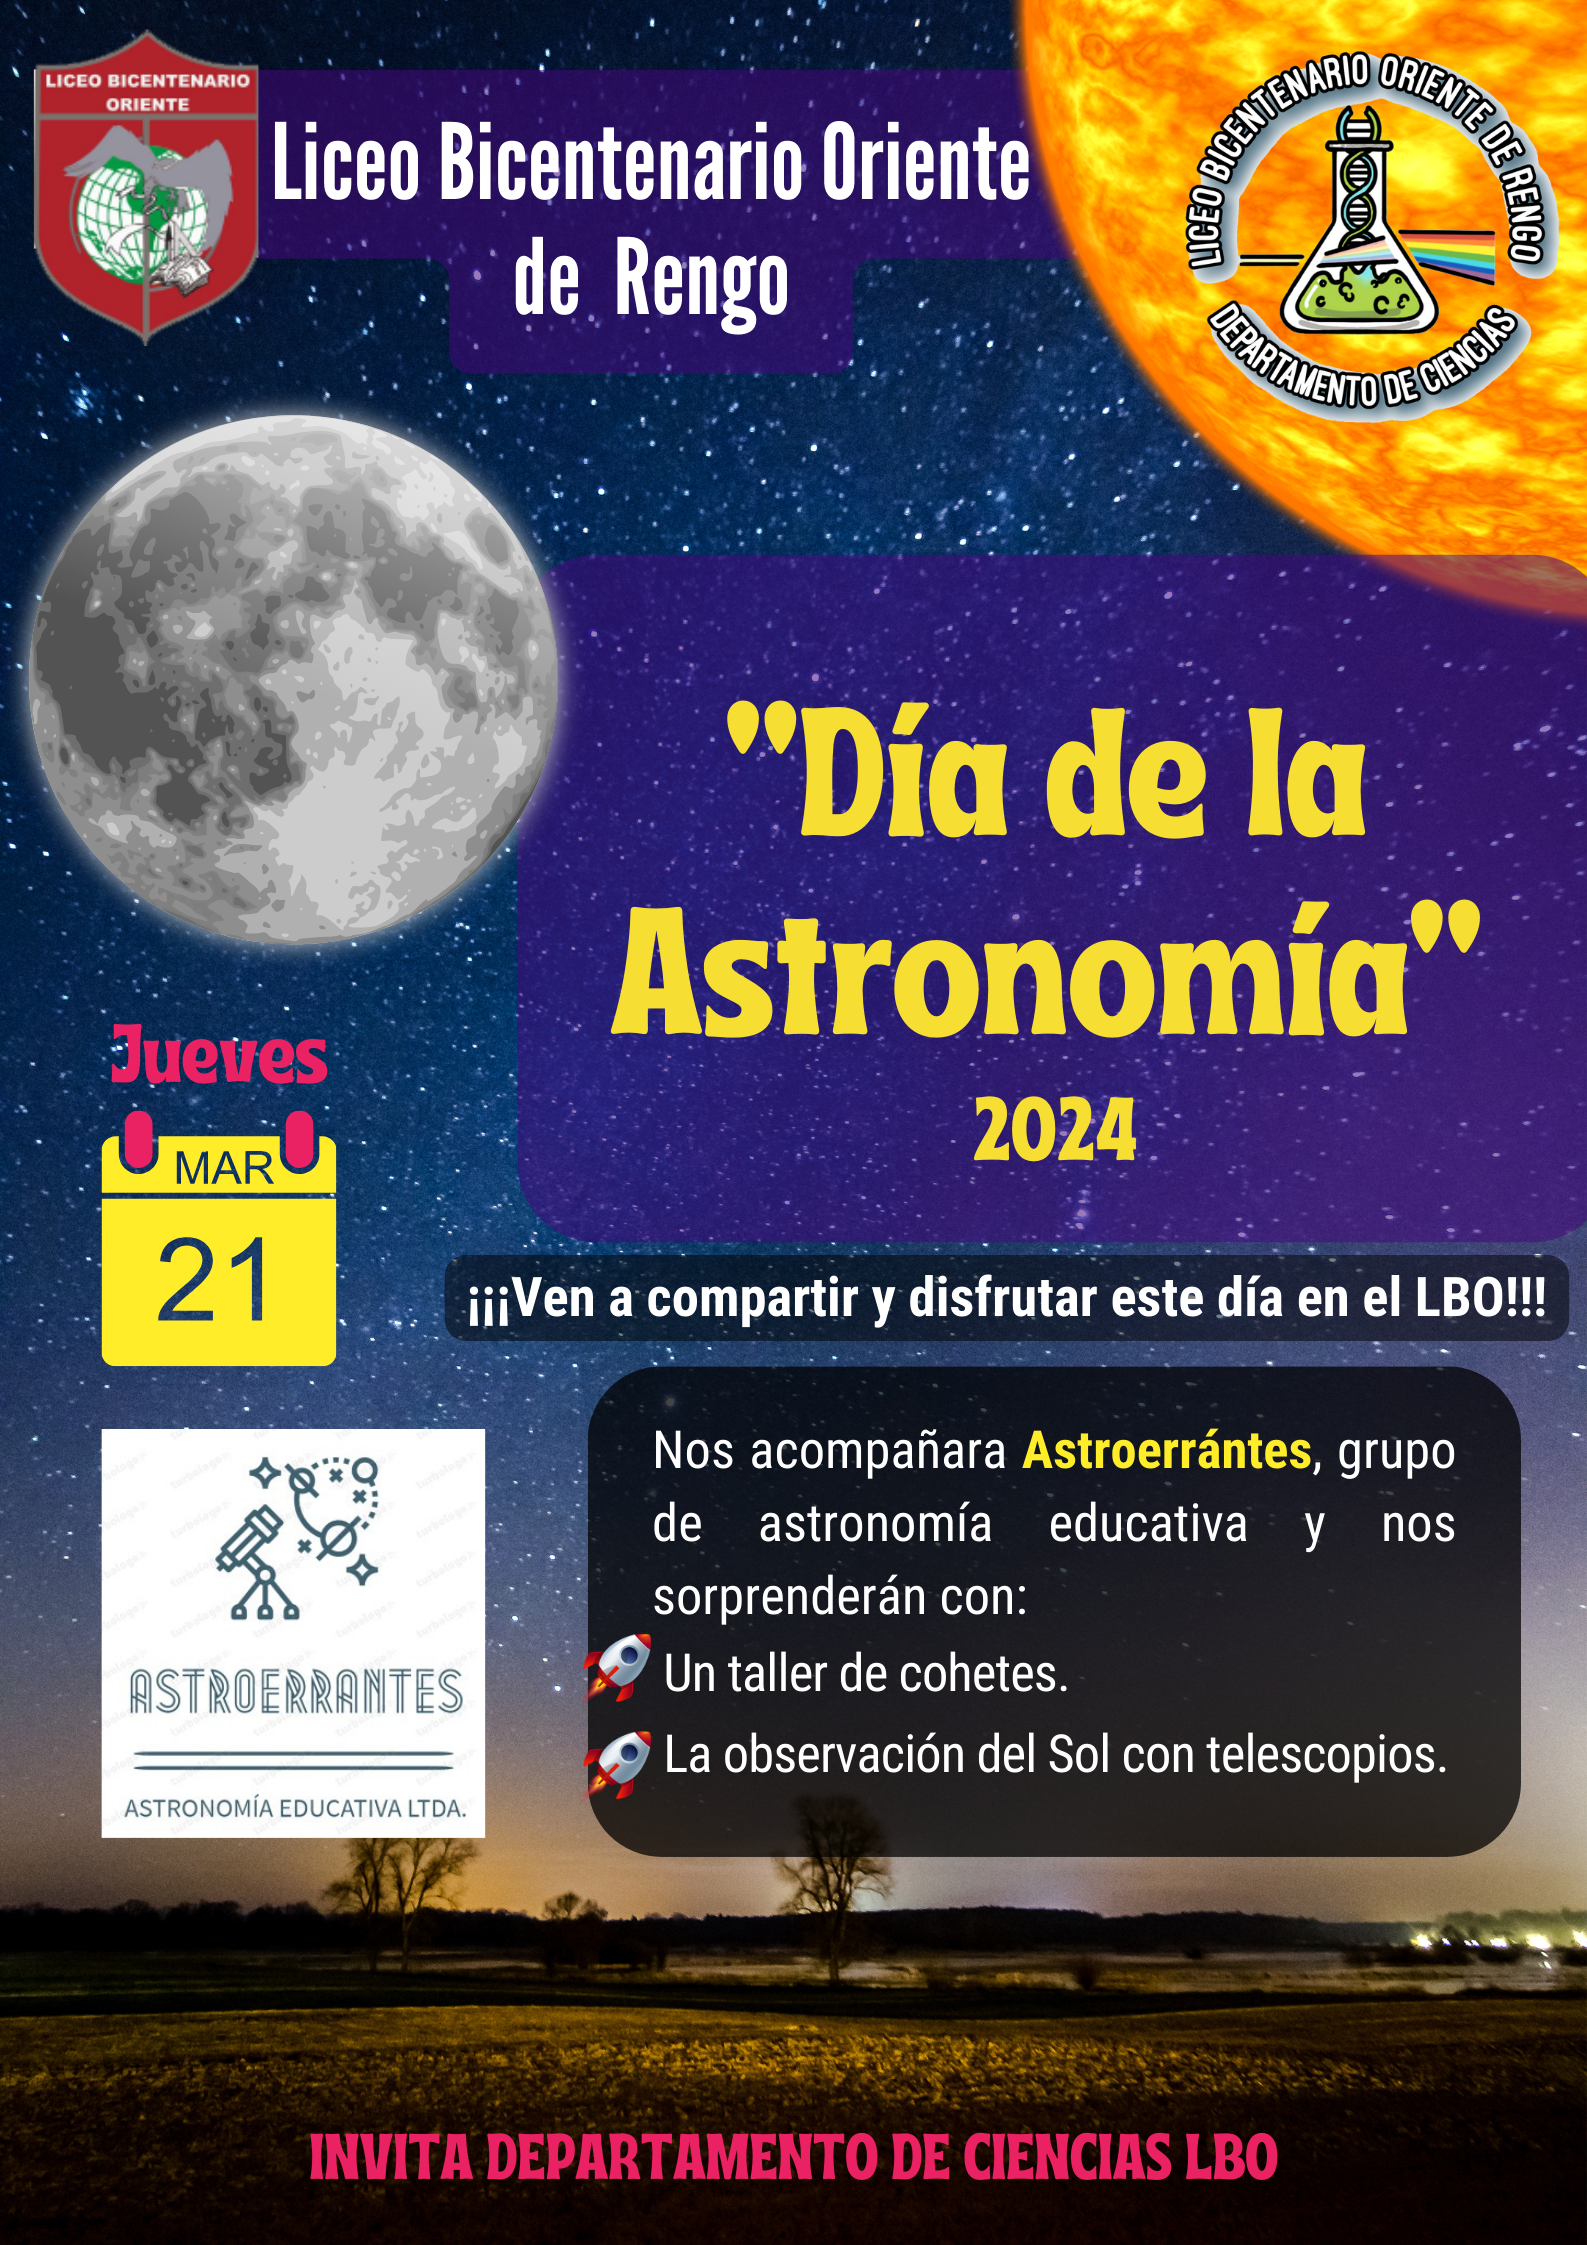 Día de la astronomía 2024: Taller de cohetes y observación solar